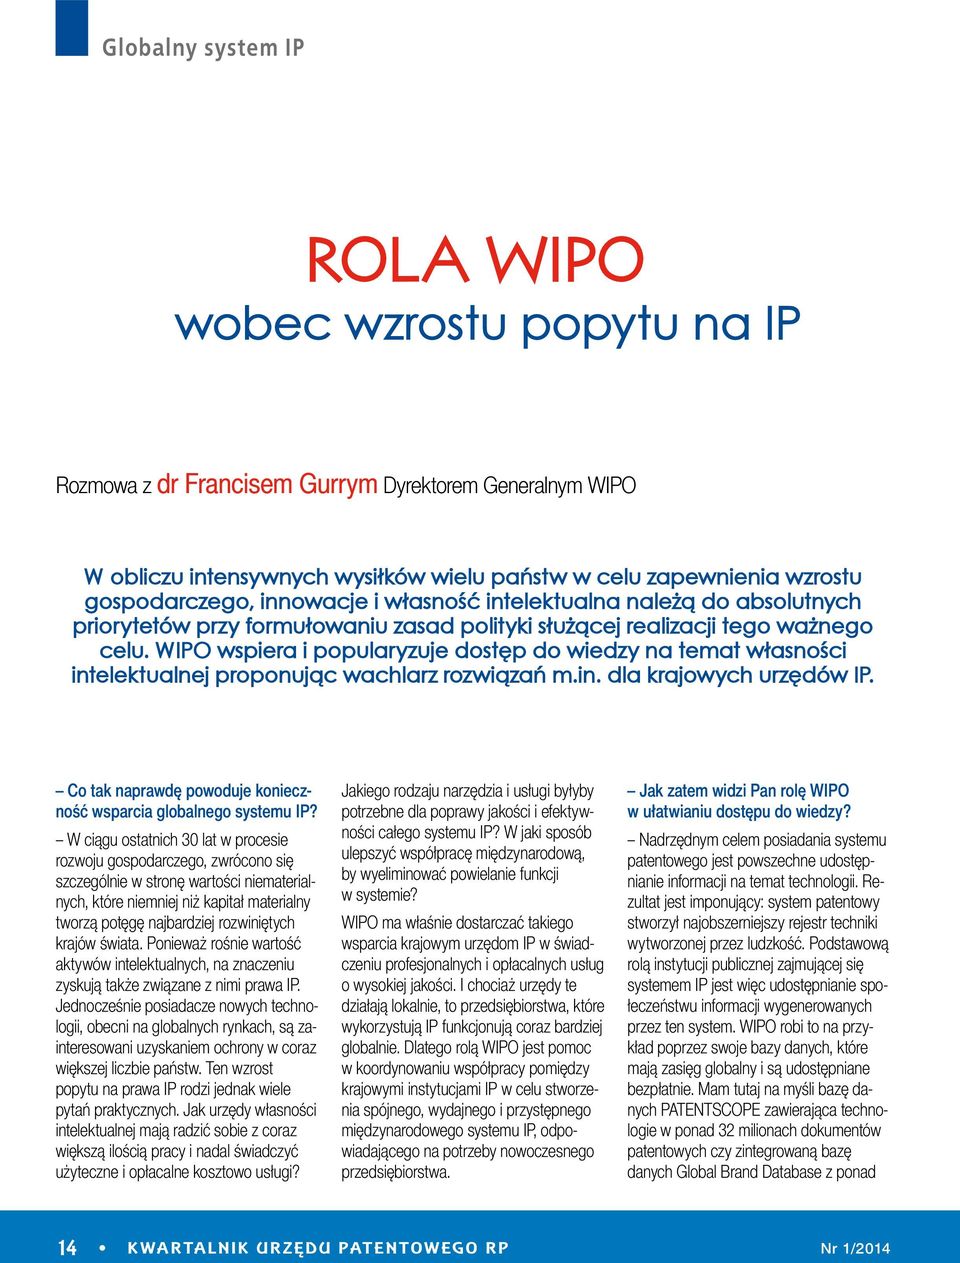 WIPO wspiera i popularyzuje dostęp do wiedzy na temat własności intelektualnej proponując wachlarz rozwiązań m.in. dla krajowych urzędów IP.